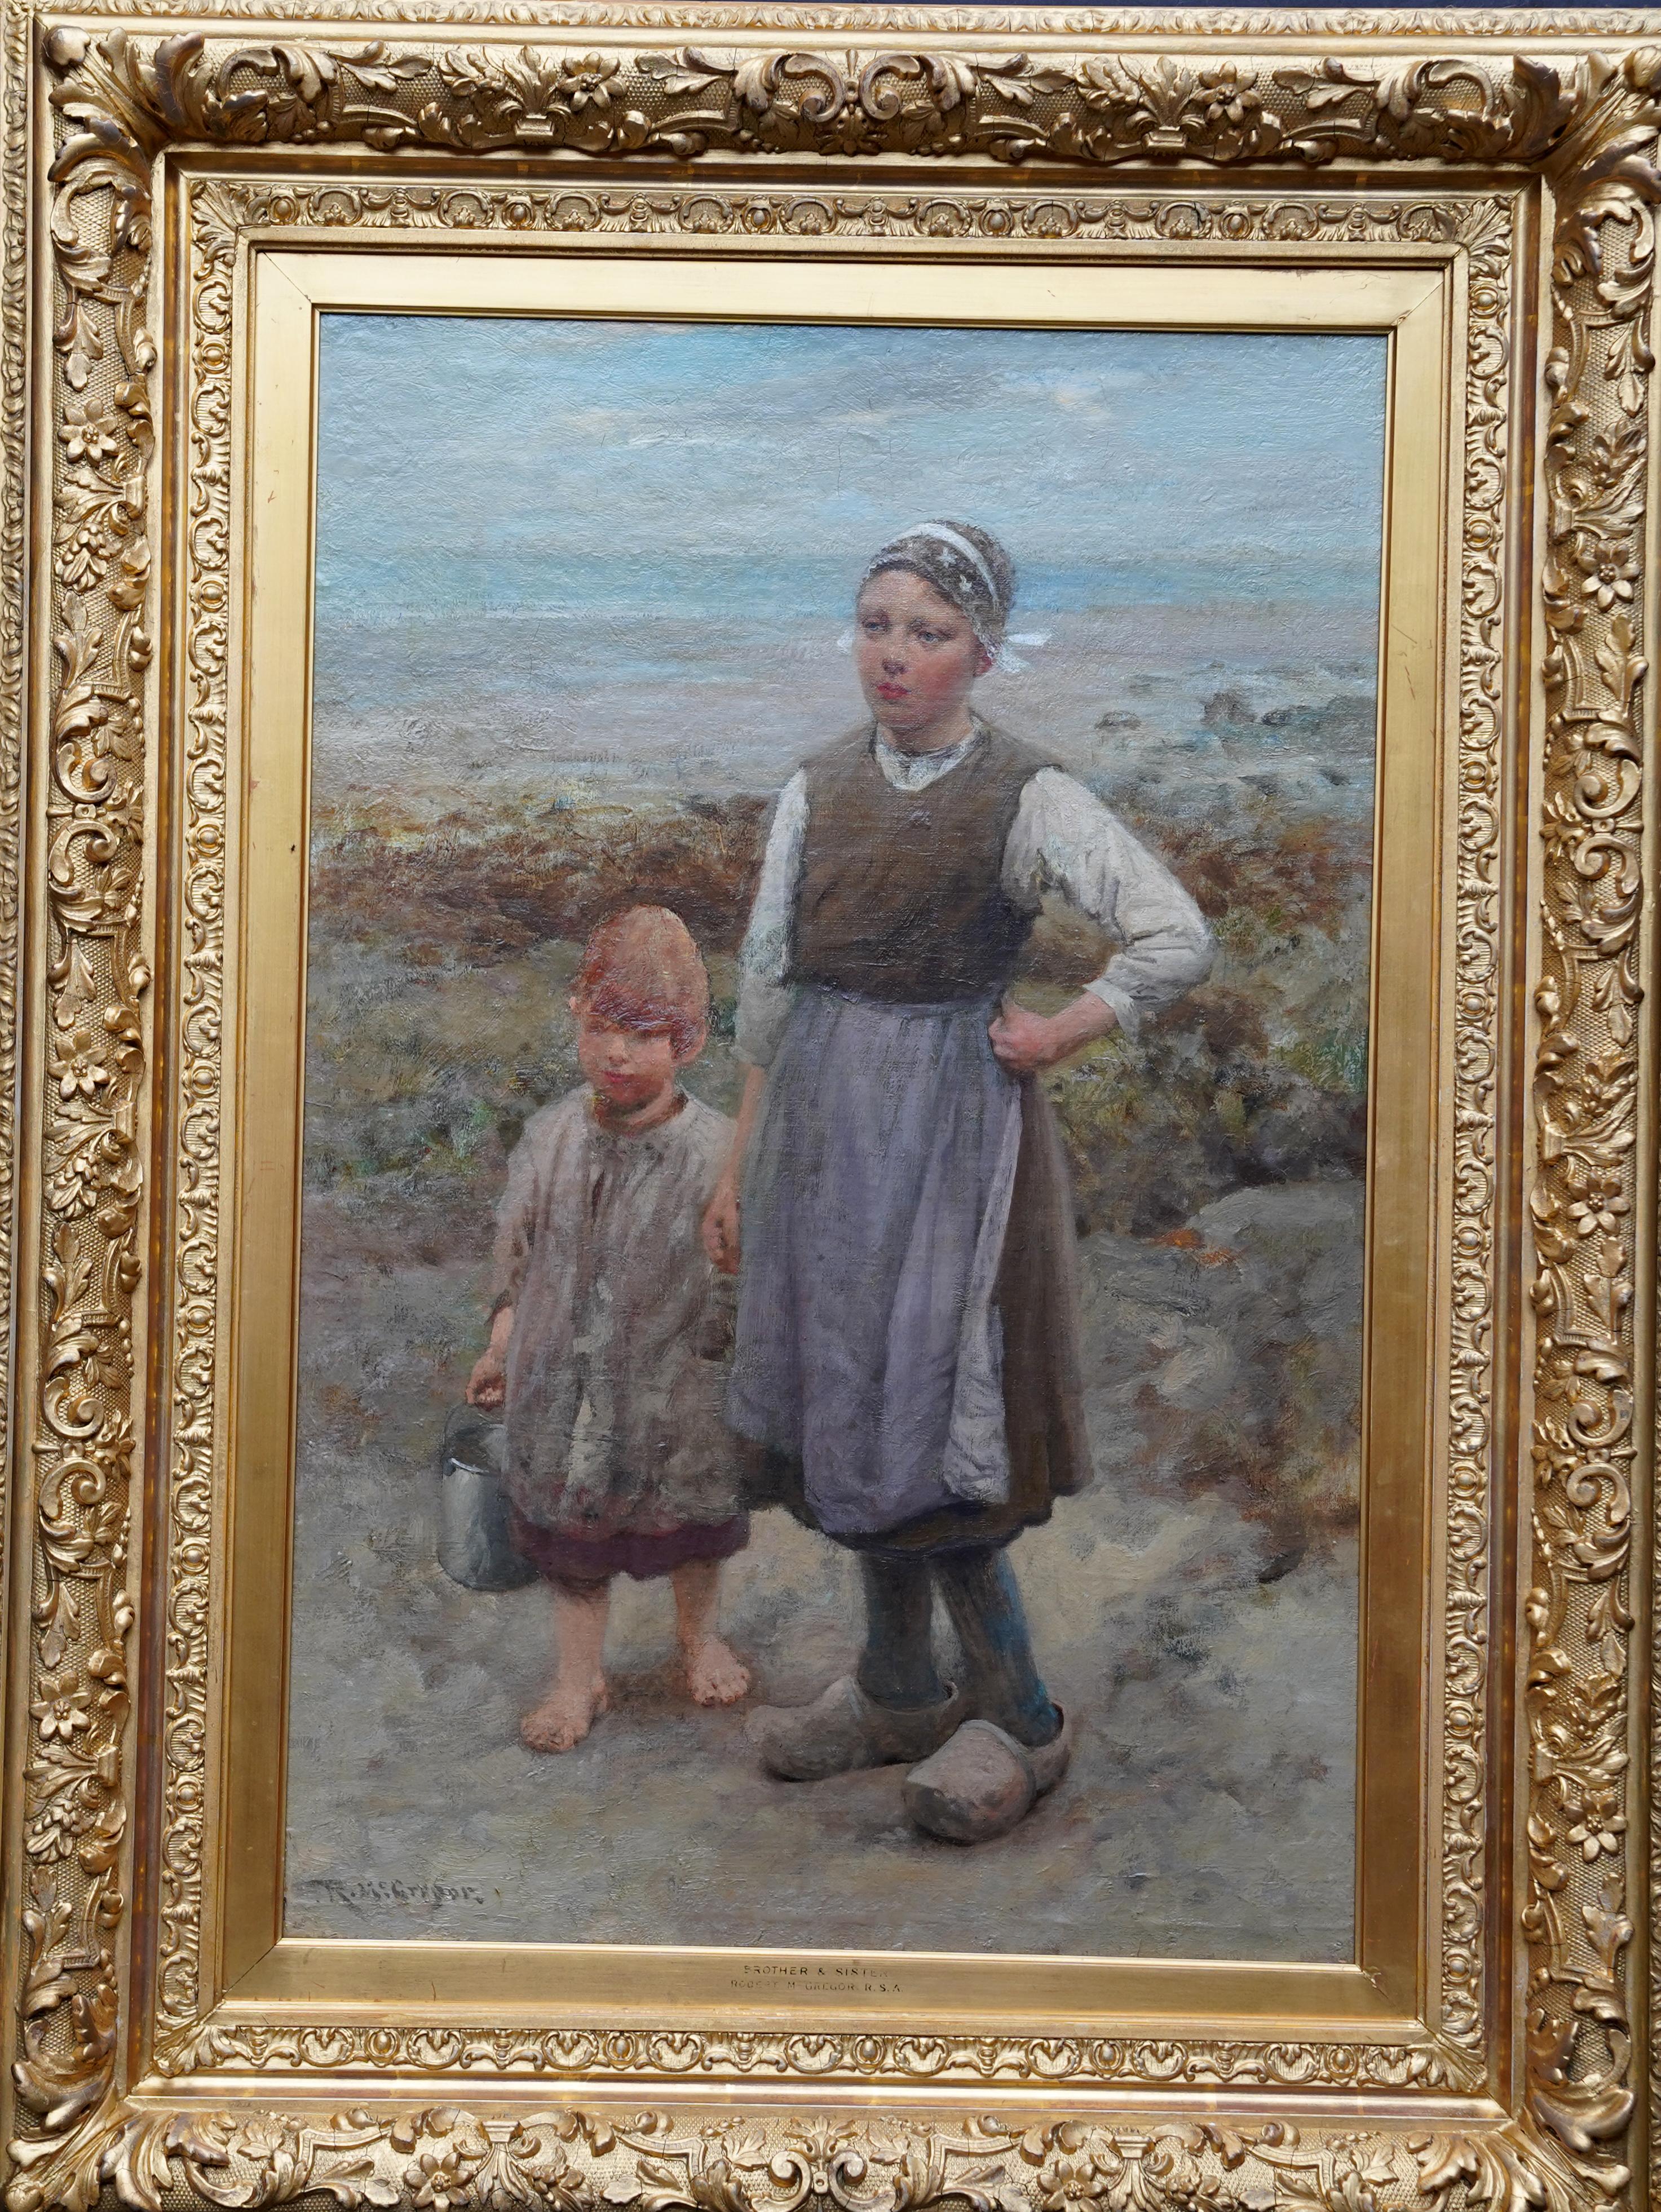 Brother and Sister - schottische Ausstellungskunst 1918 Porträt-Landschafts-Ölgemälde